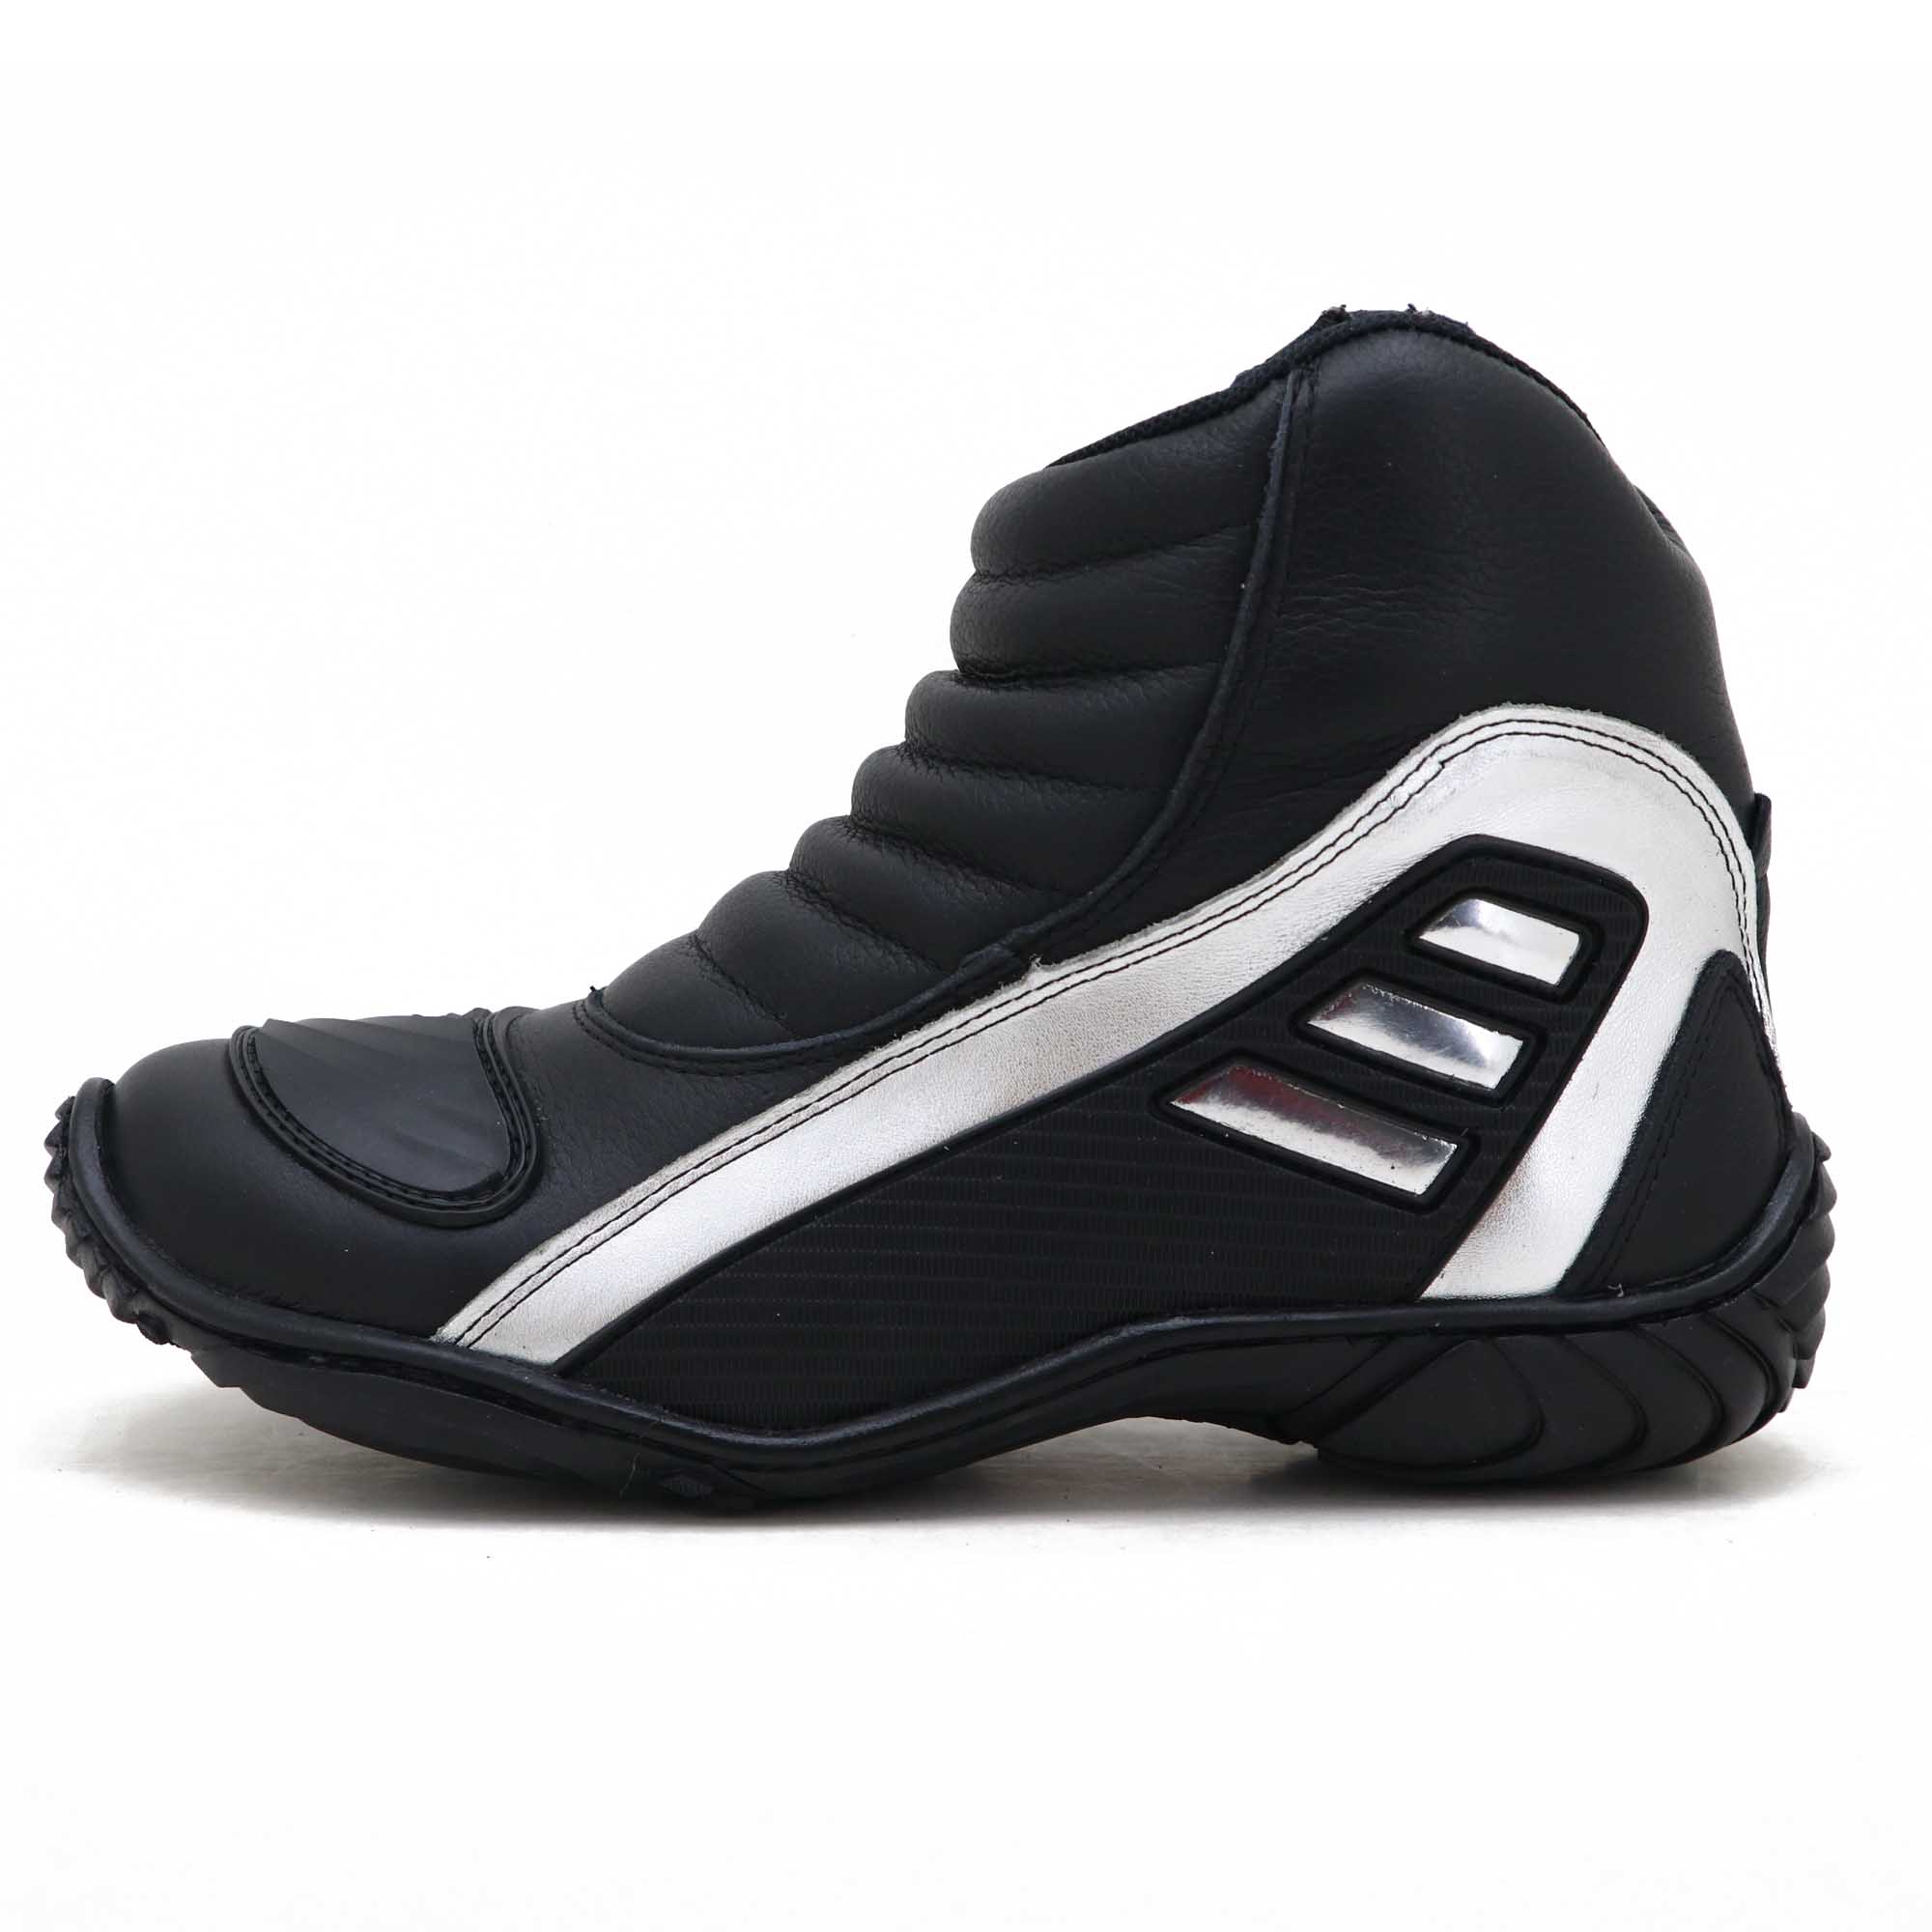 Bota motociclista Atron Shoes Refletiva em couro legítimo resistente a água nas cores preto e prata 279